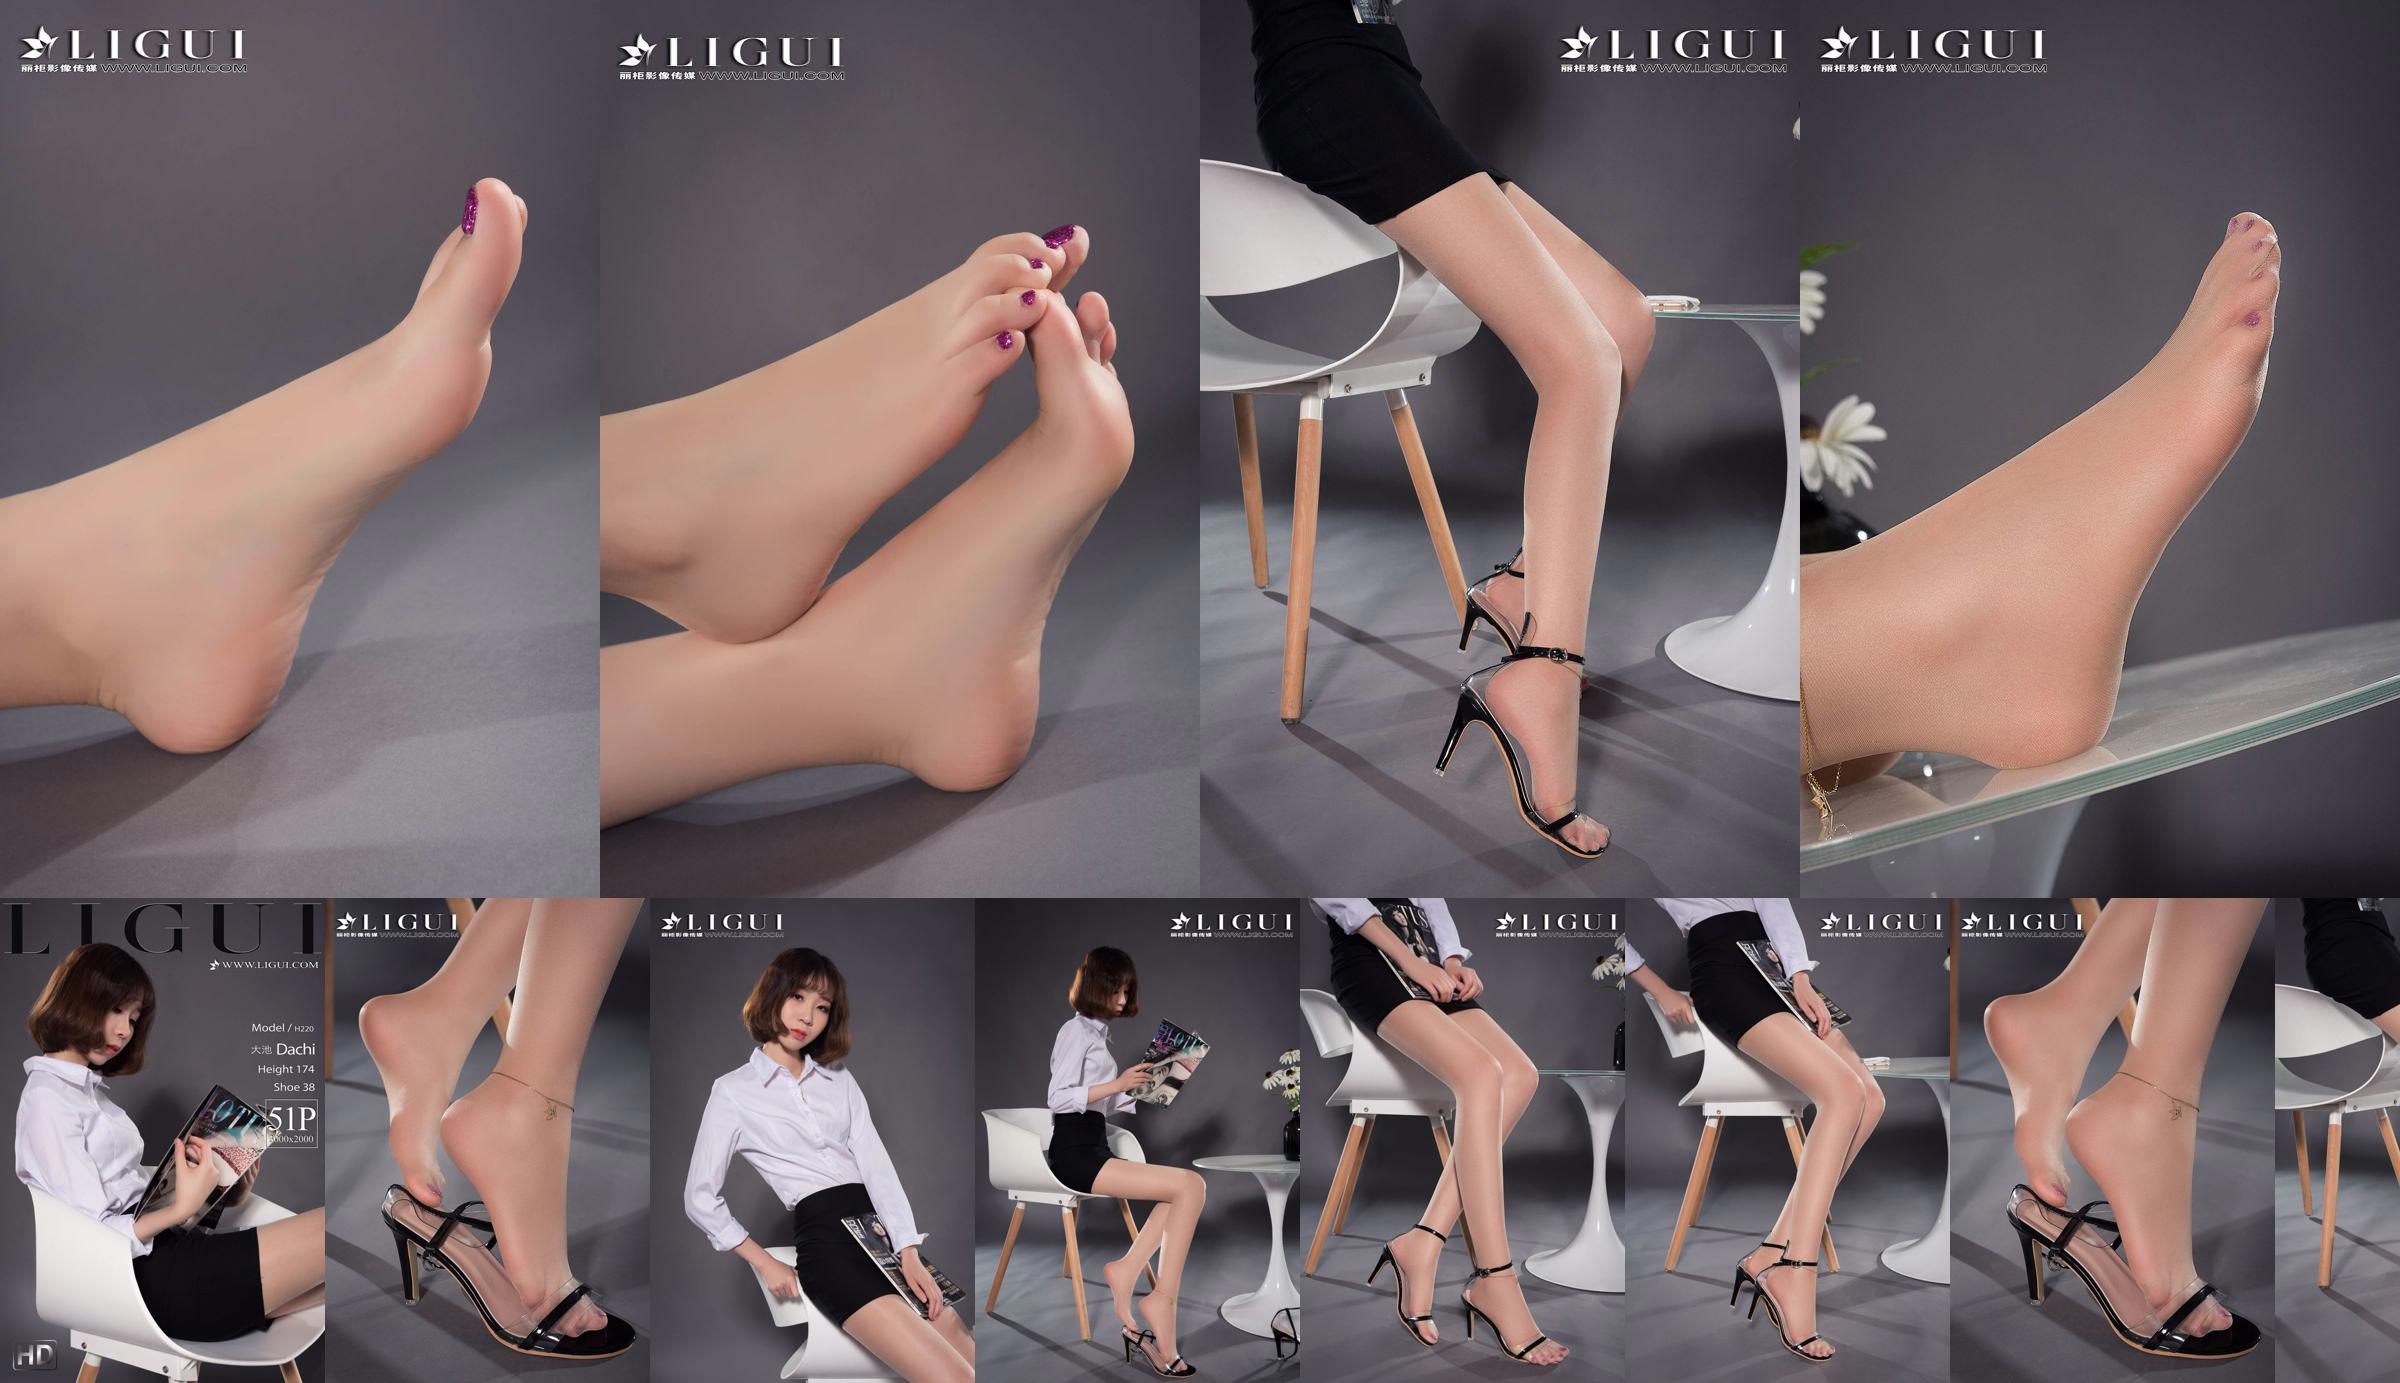 Người mẫu chân Oike "Heo với giày cao gót CV" [Ligui Ligui] Vẻ đẹp Internet No.432d3f Trang 1